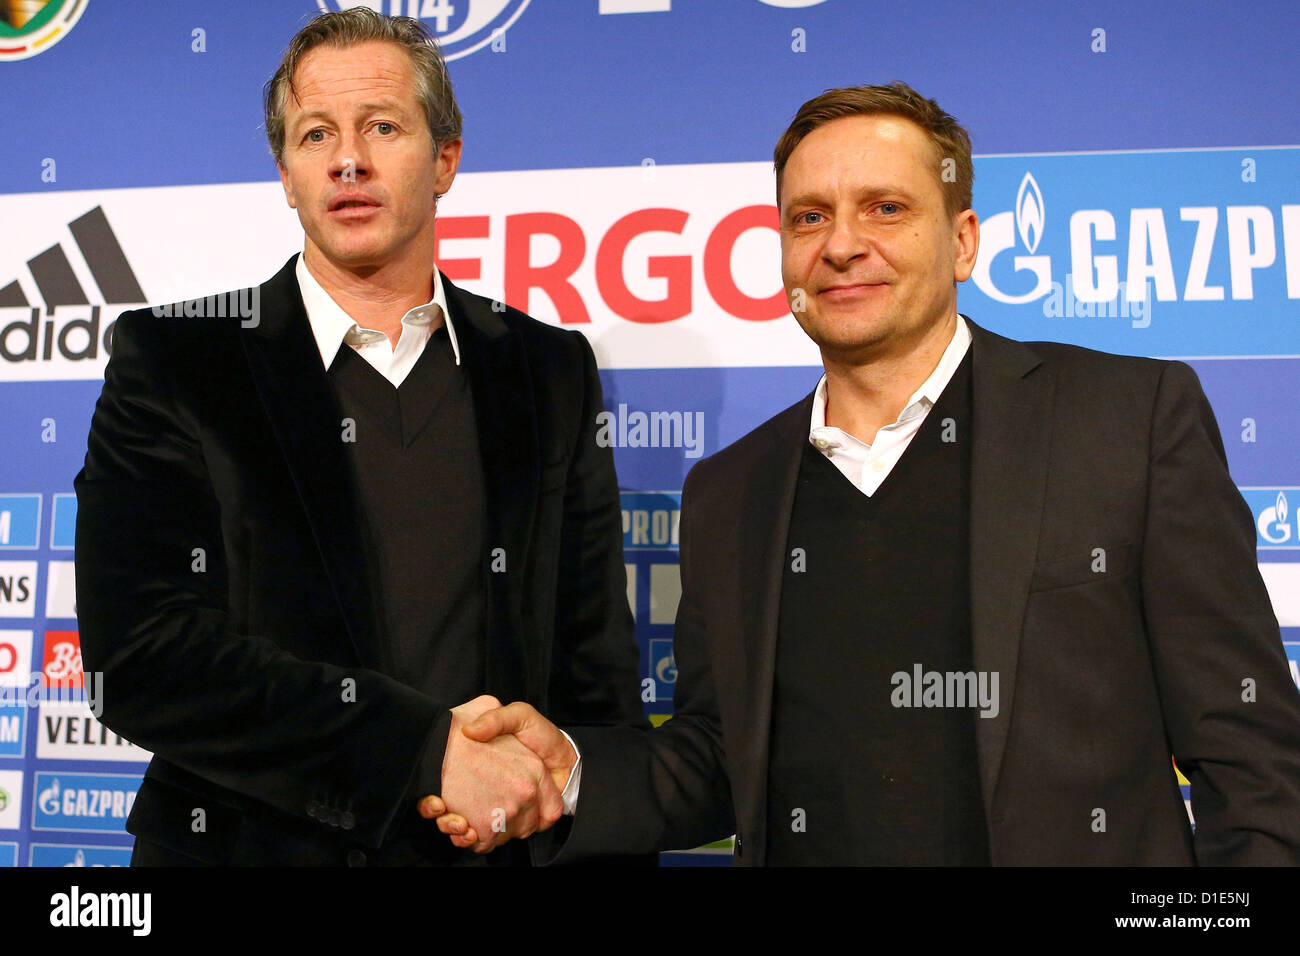 Direttore sportivo Horst Heldt da FC Schalke 04 presenta il nuovo allenatore Jens Keller nel corso di una conferenza stampa a Gelsenkirchen, Germania, 16 dicembre 2012. Foto: Kevin Kurek Foto Stock